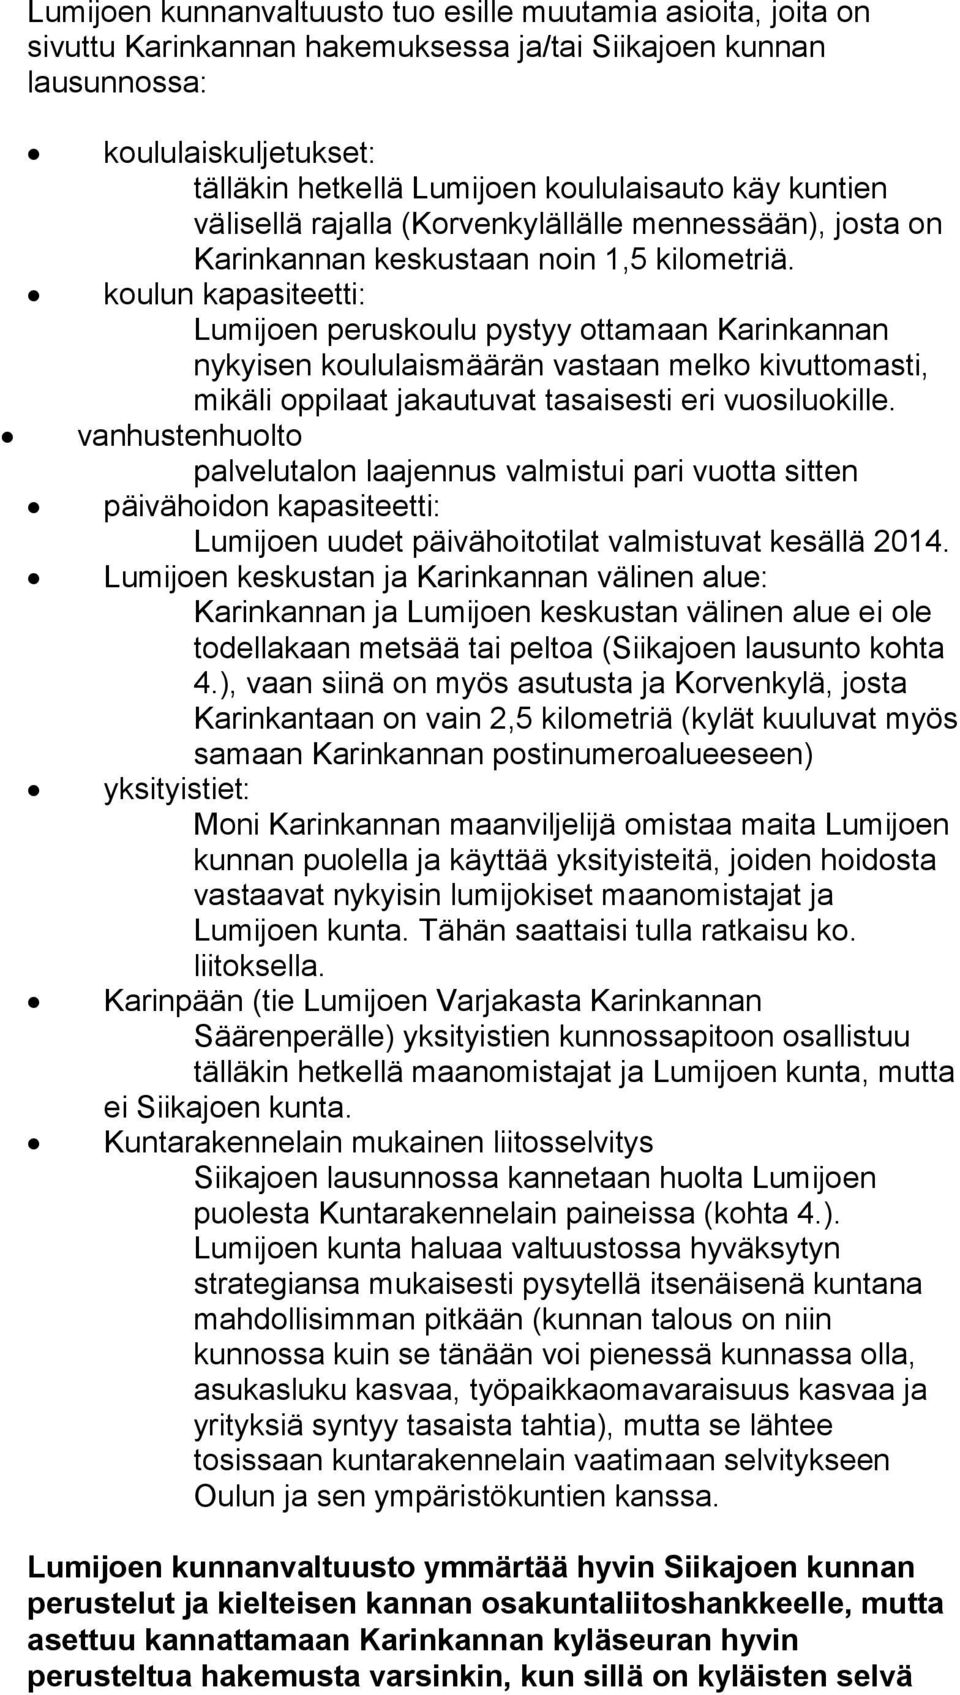 koulun kapasiteetti: Lumijoen peruskoulu pystyy ottamaan Karinkannan nykyisen koululaismäärän vastaan melko kivuttomasti, mikäli oppilaat jakautuvat tasaisesti eri vuosiluokille.